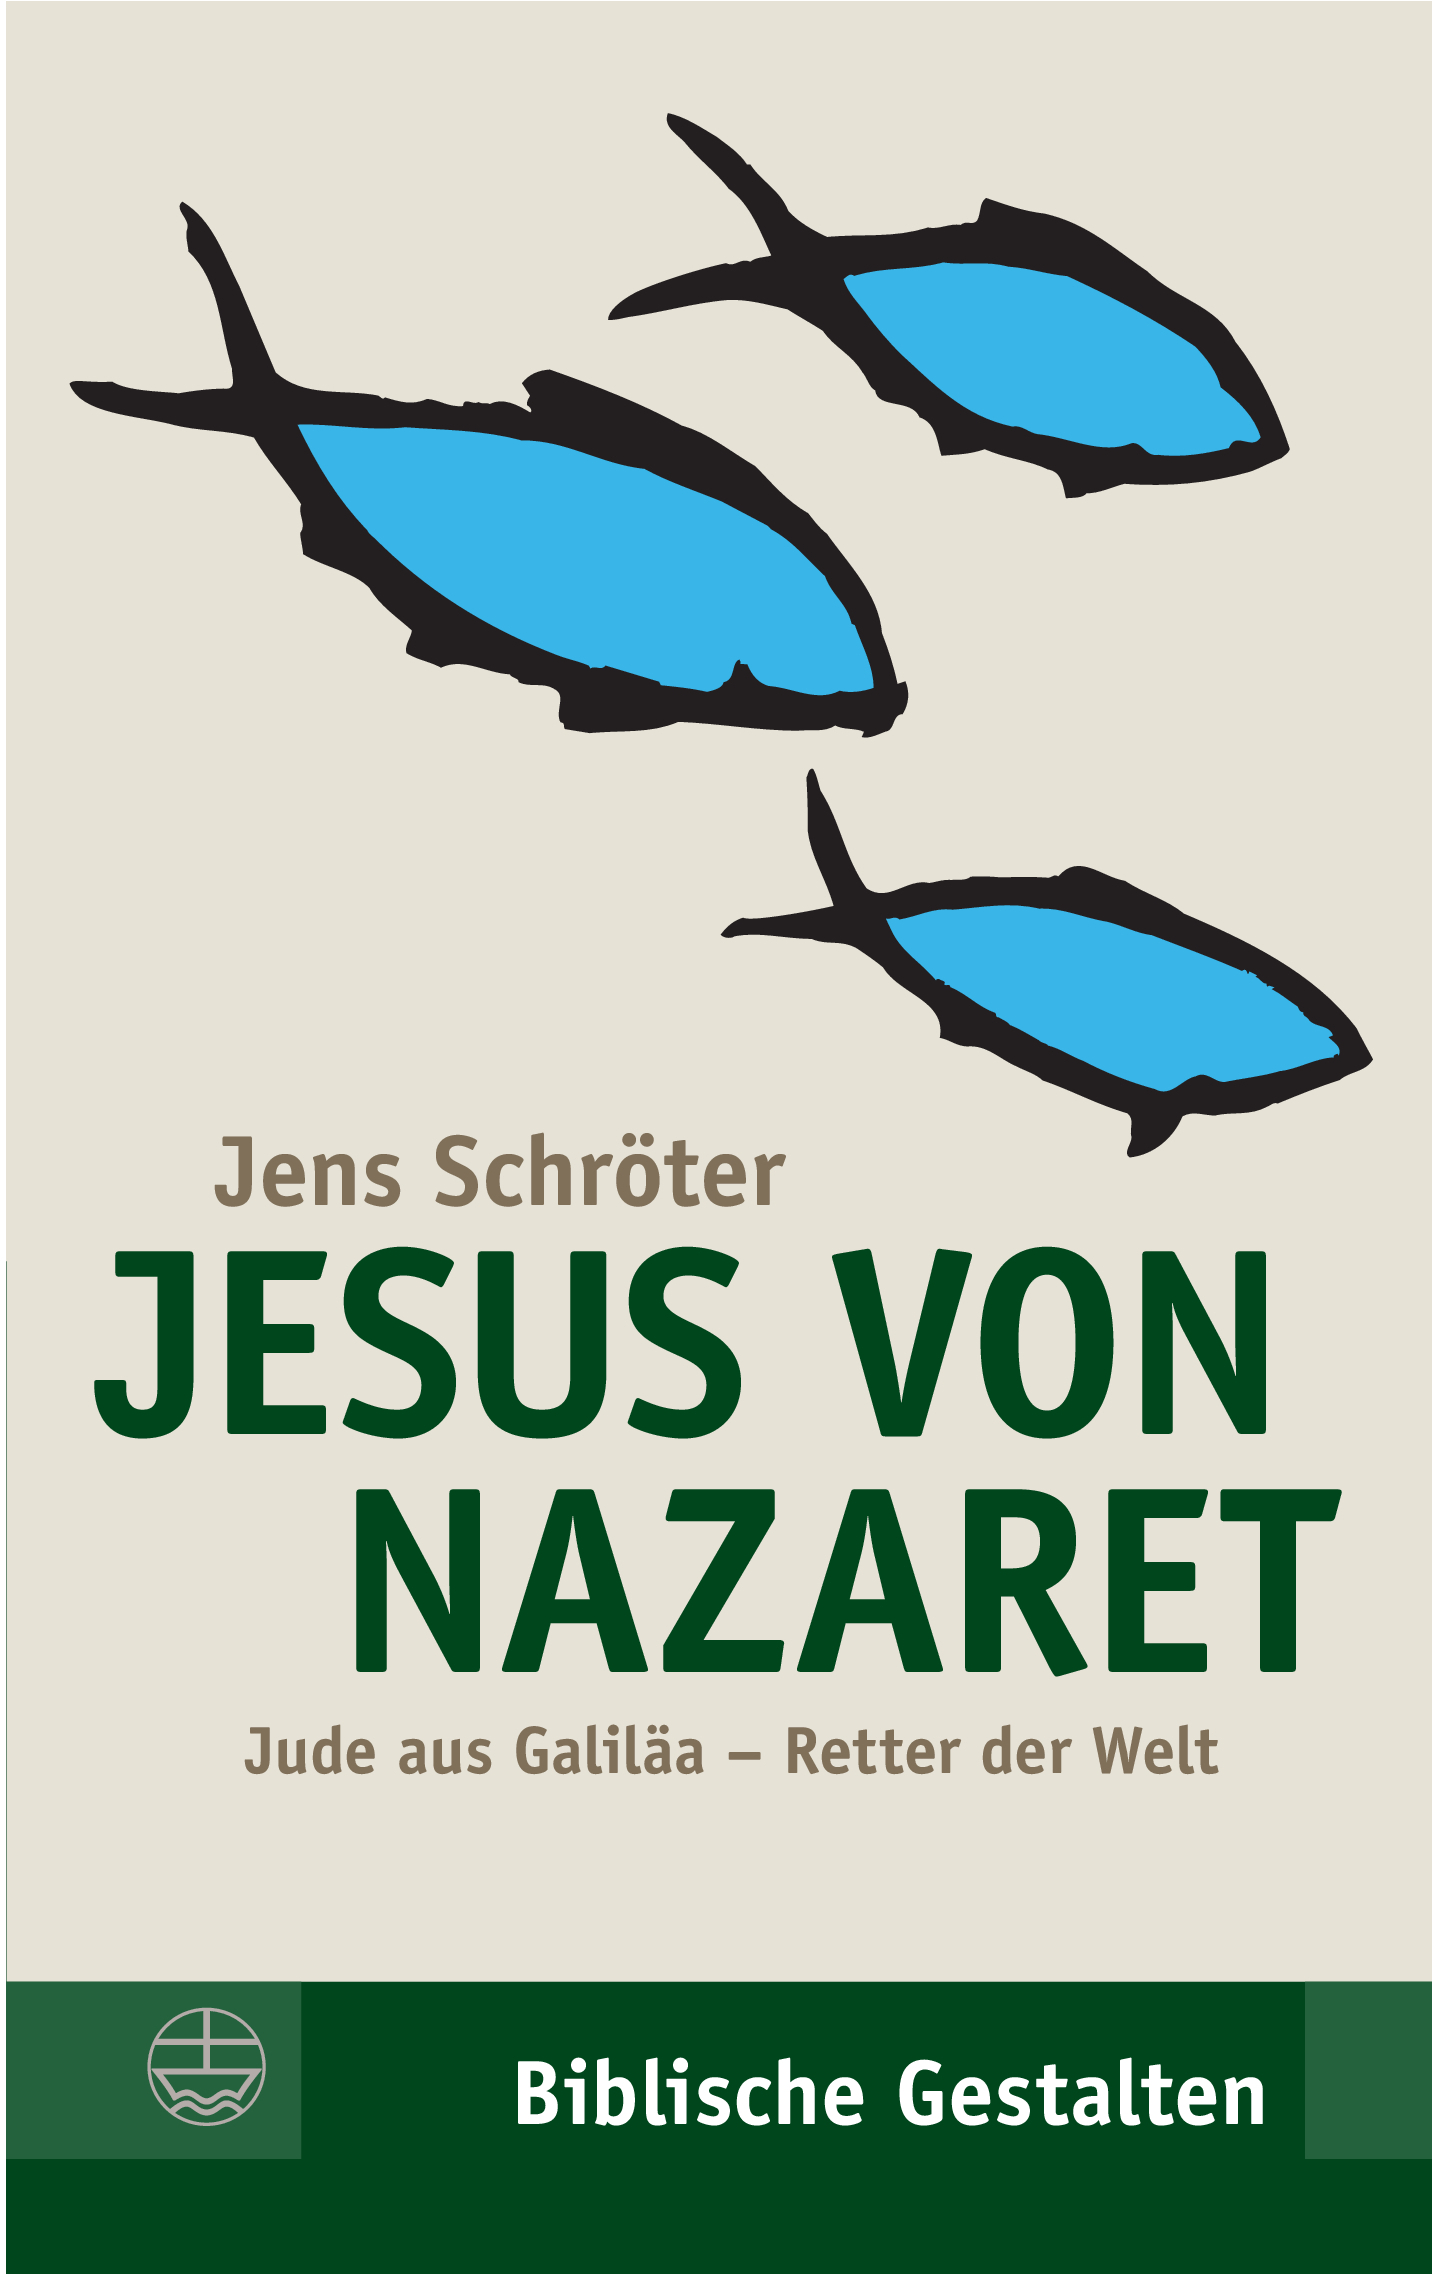 Jesus von Nazaret - Biblische Gestalten Band 15